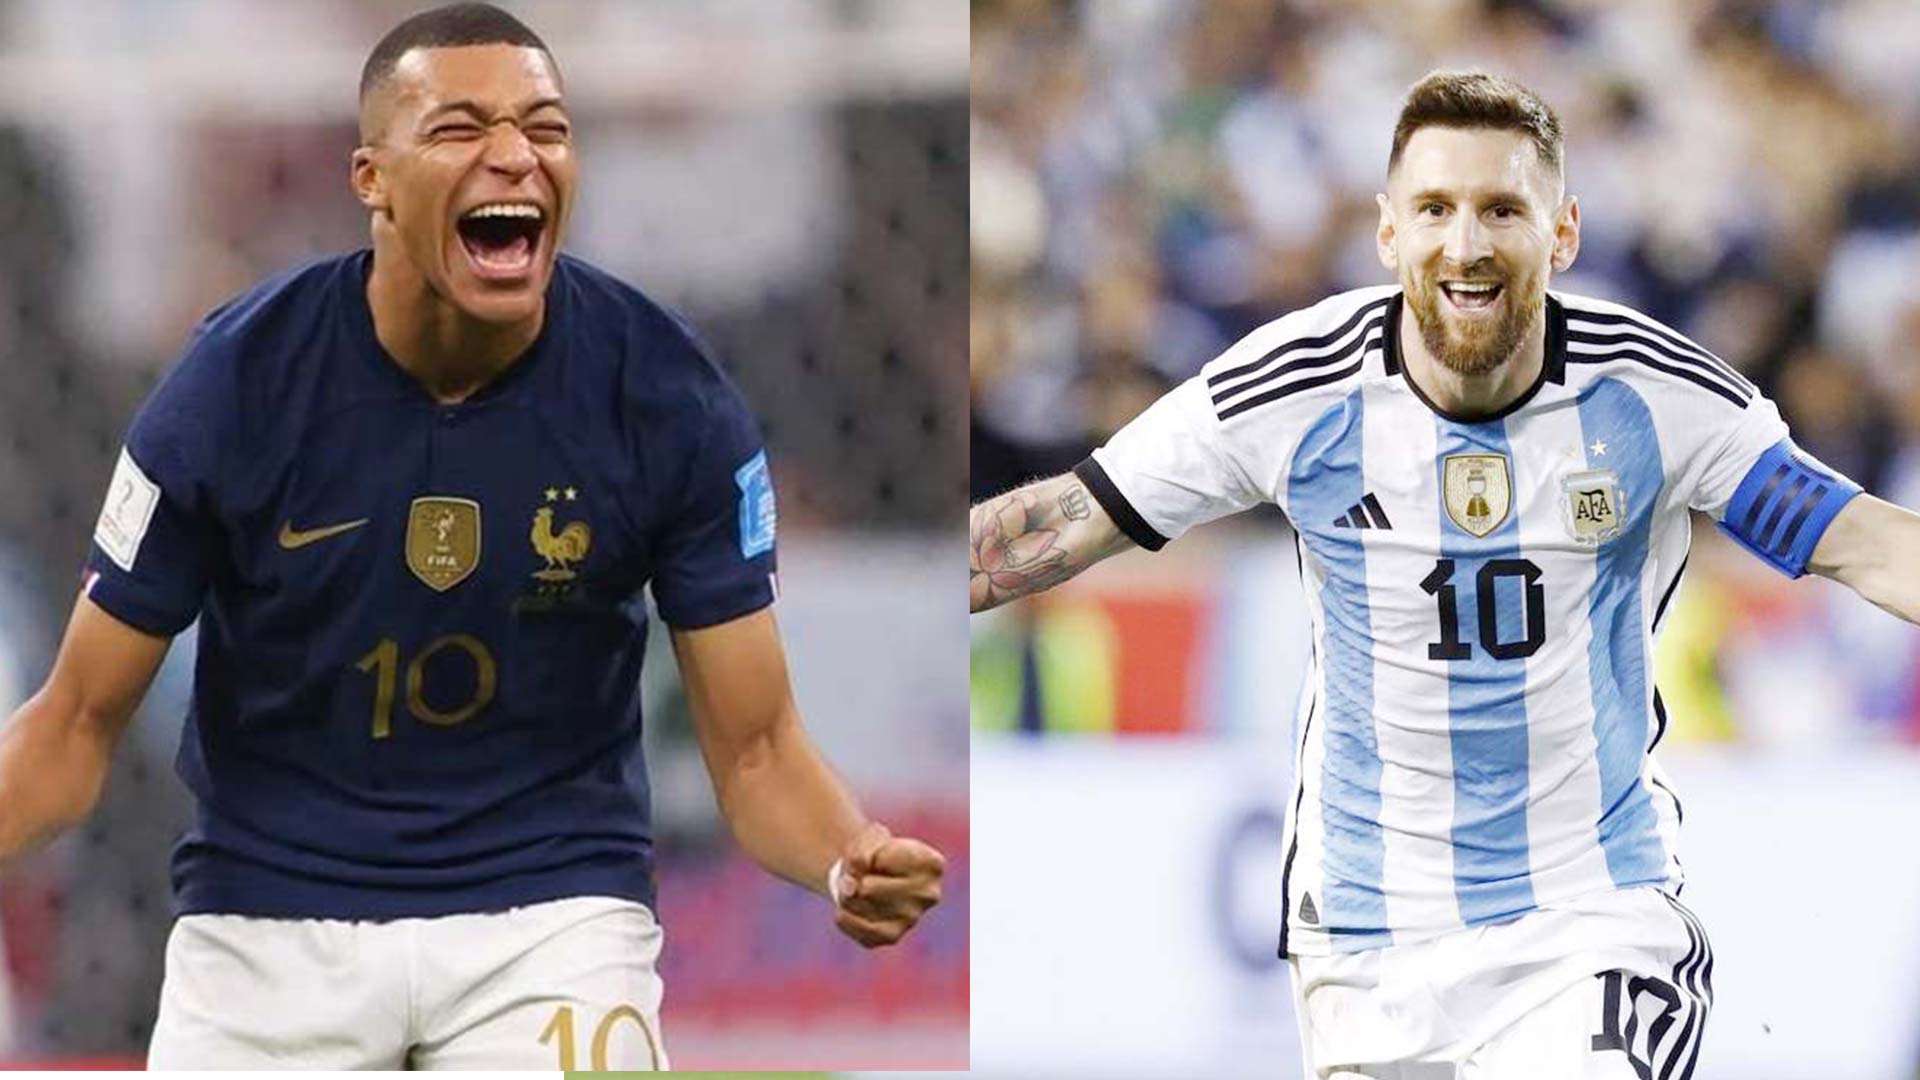 Những biếm họa về Lionel Messi và đội tuyển Argentina sẽ khiến bạn cười đầy thỏa thích. Hãy xem những bức ảnh này để thấy cách nghệ sĩ đã biến những ngôi sao bóng đá trở thành những nhân vật hài hước, đáng yêu.